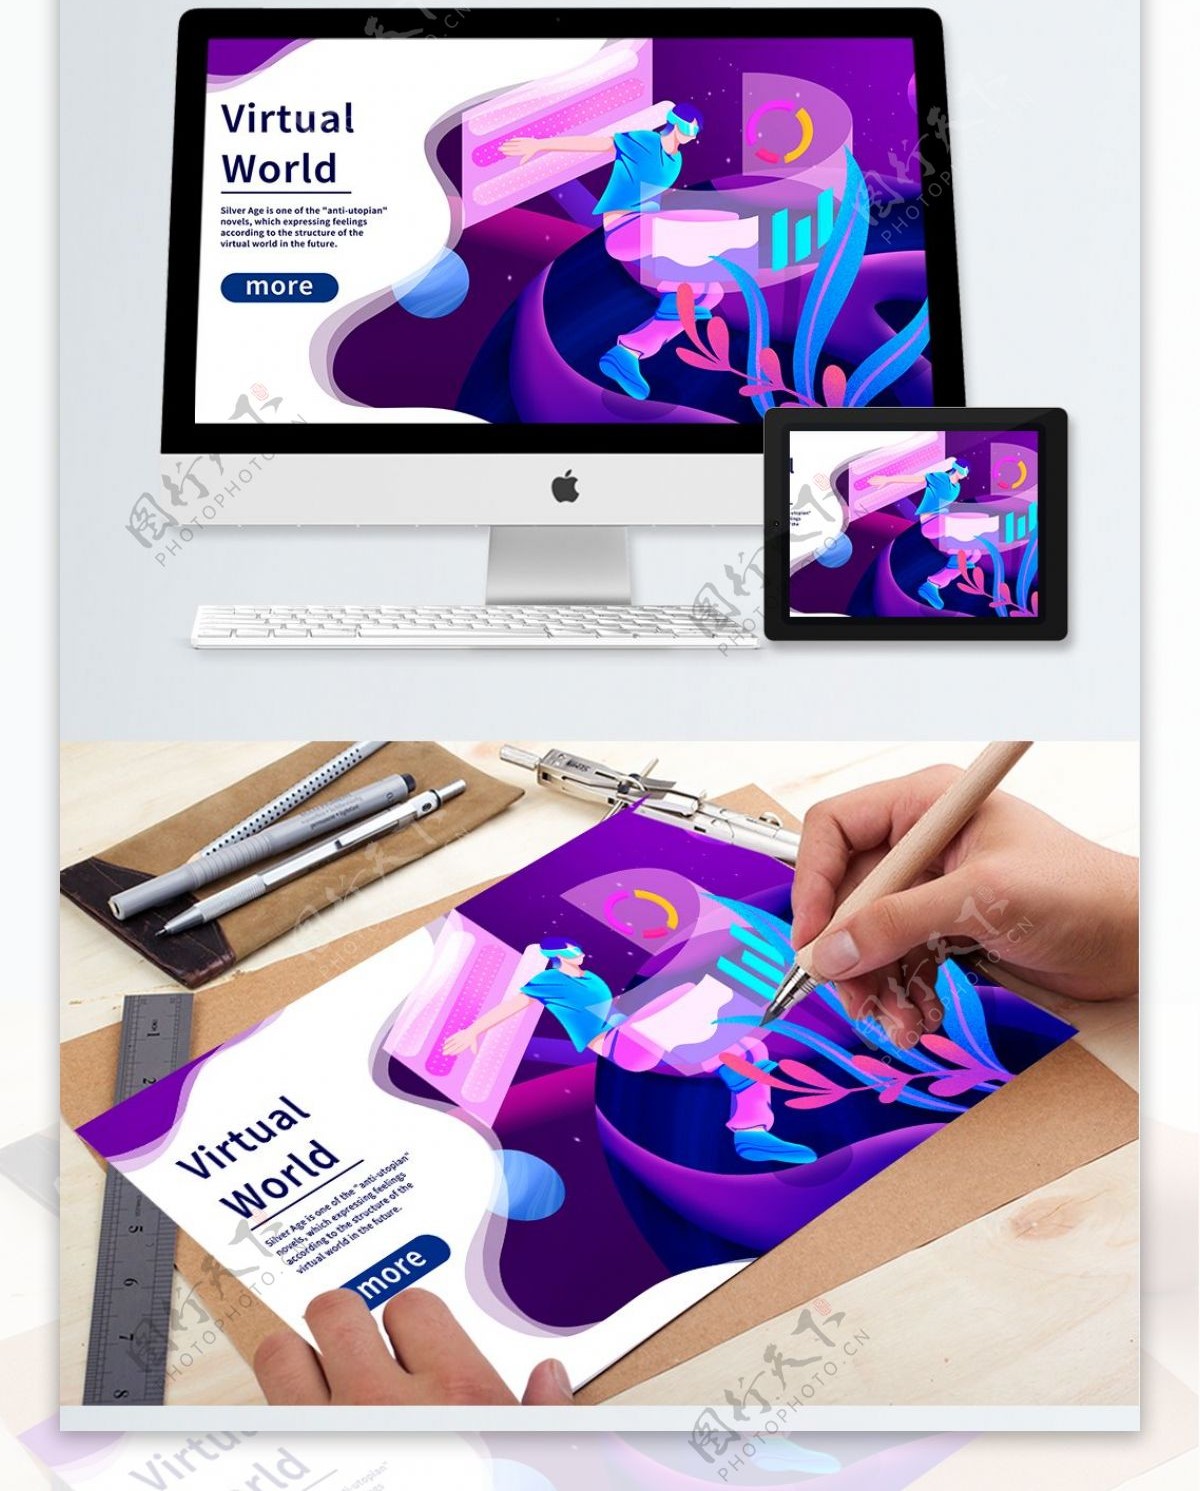 网页配图VR紫色未来虚拟世界手绘插画